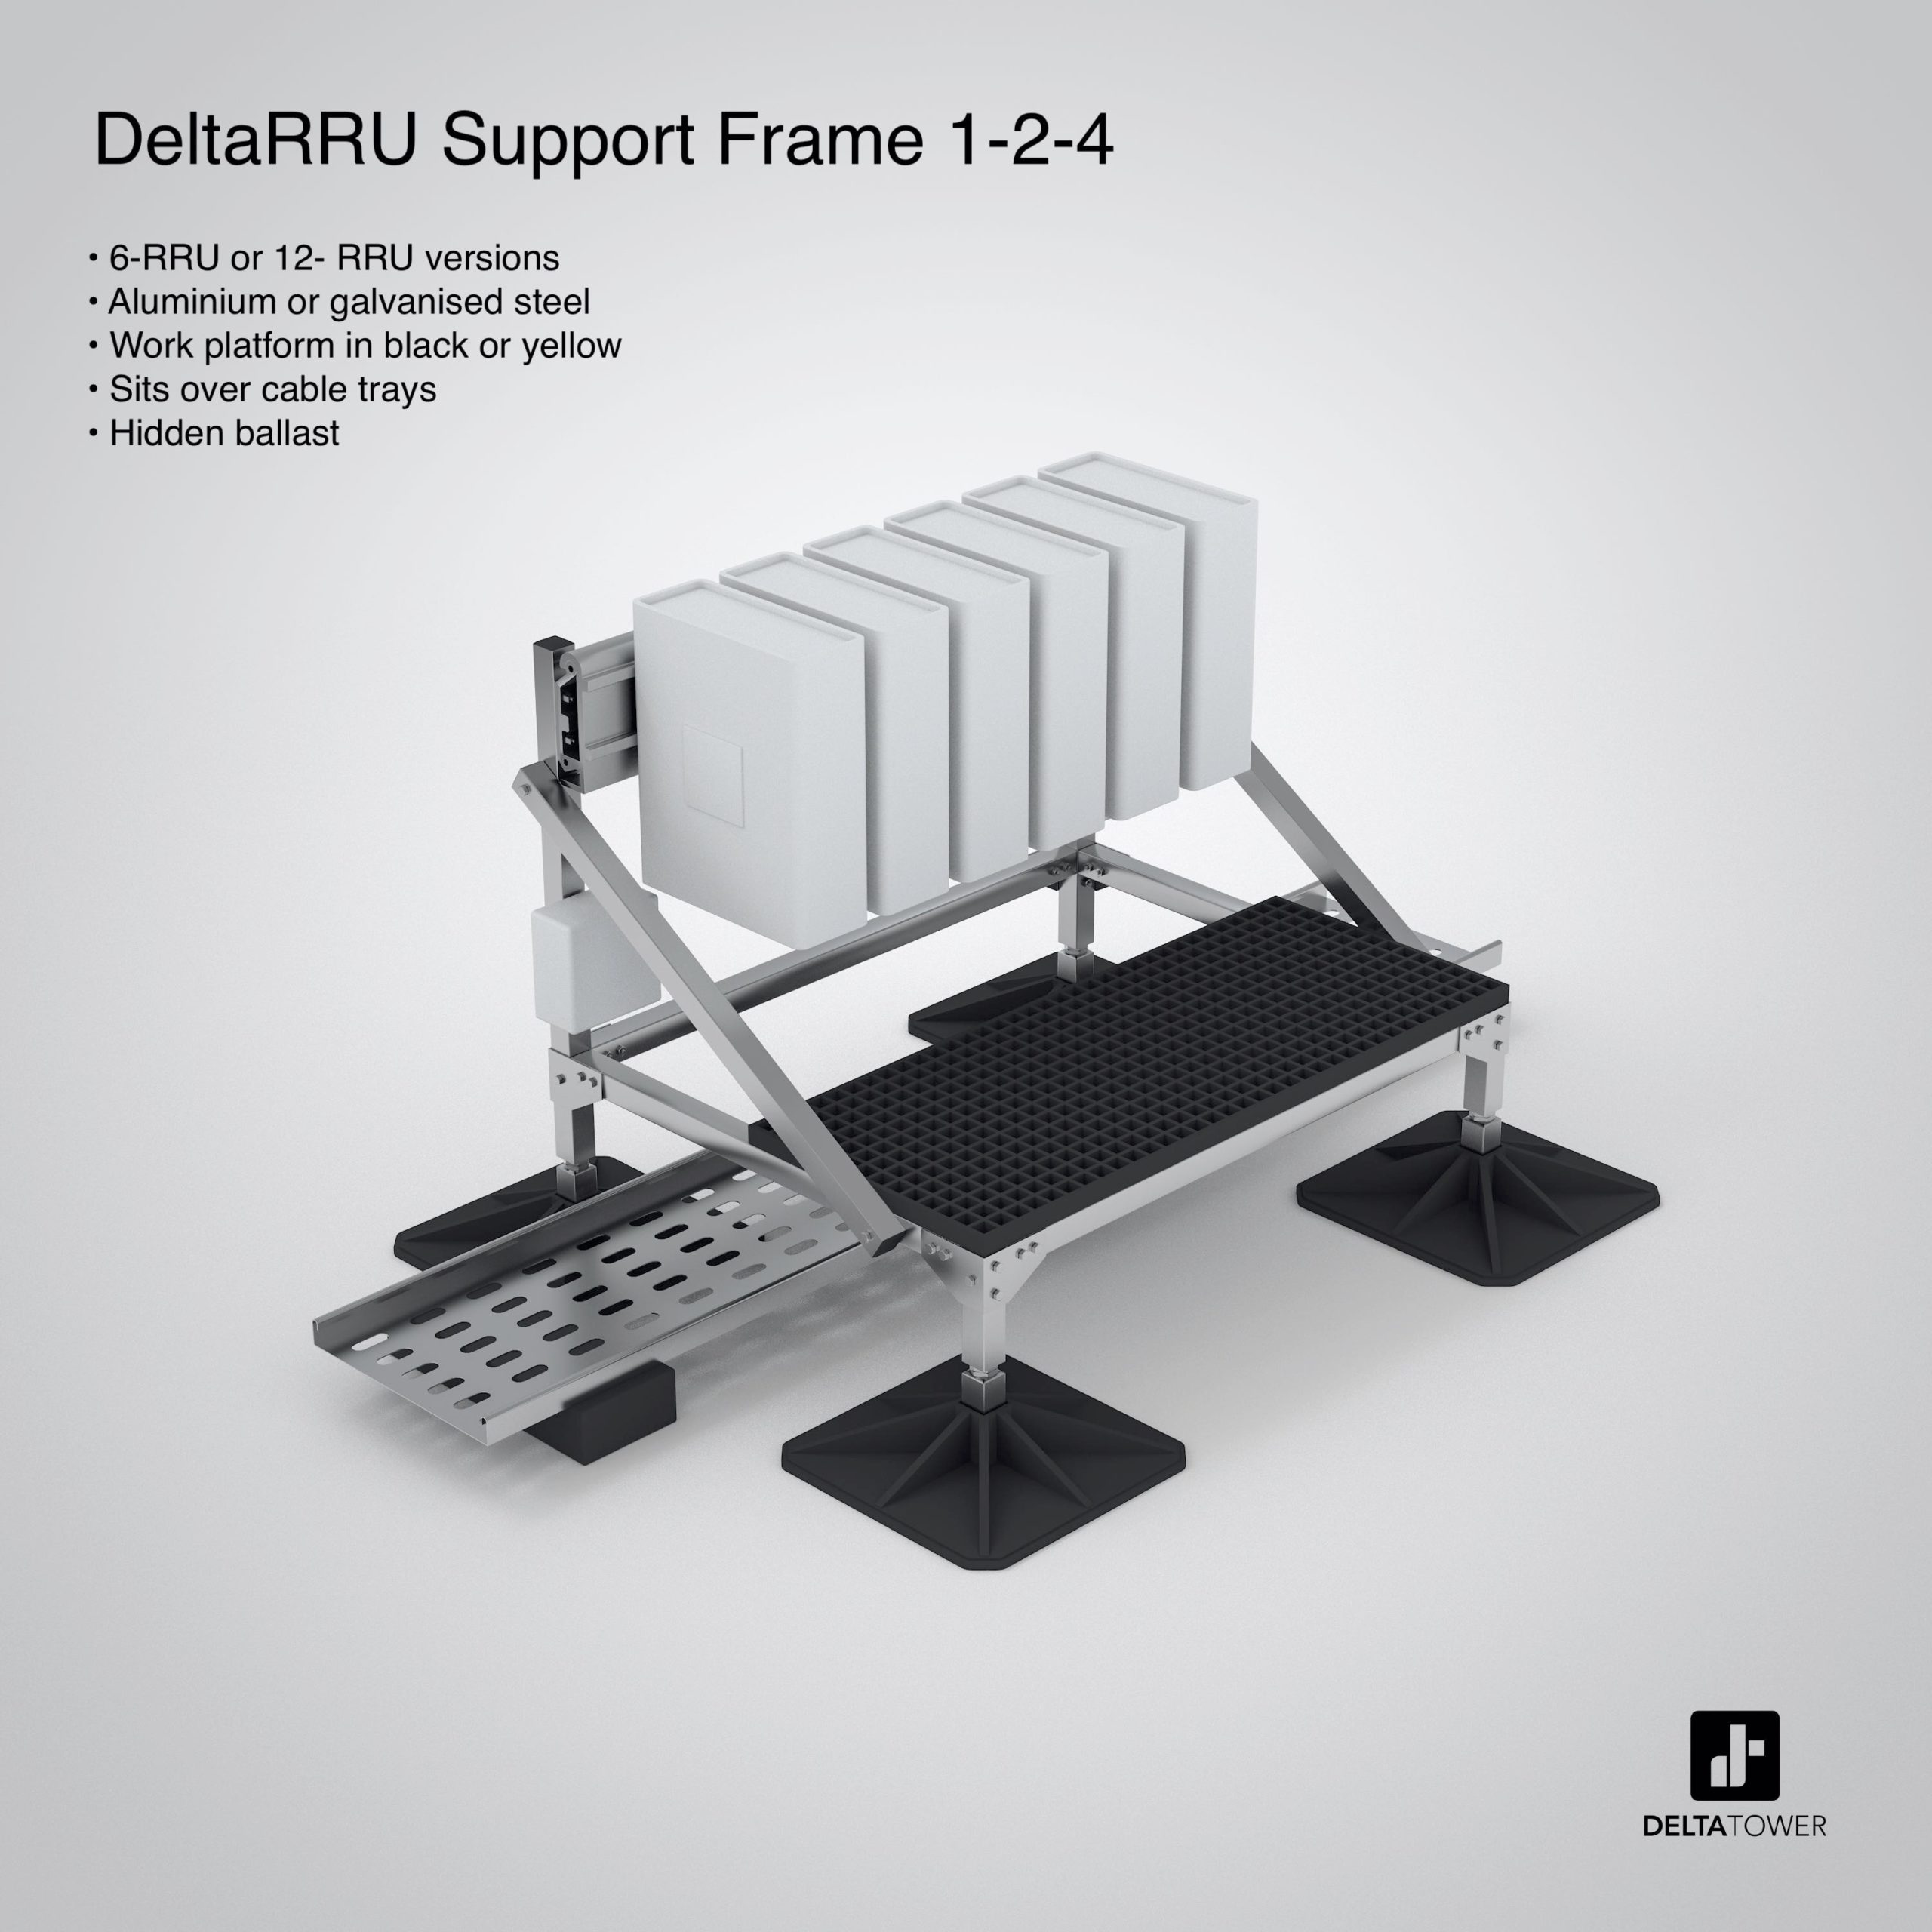 DeltaRRU Support Frame 1-2-4